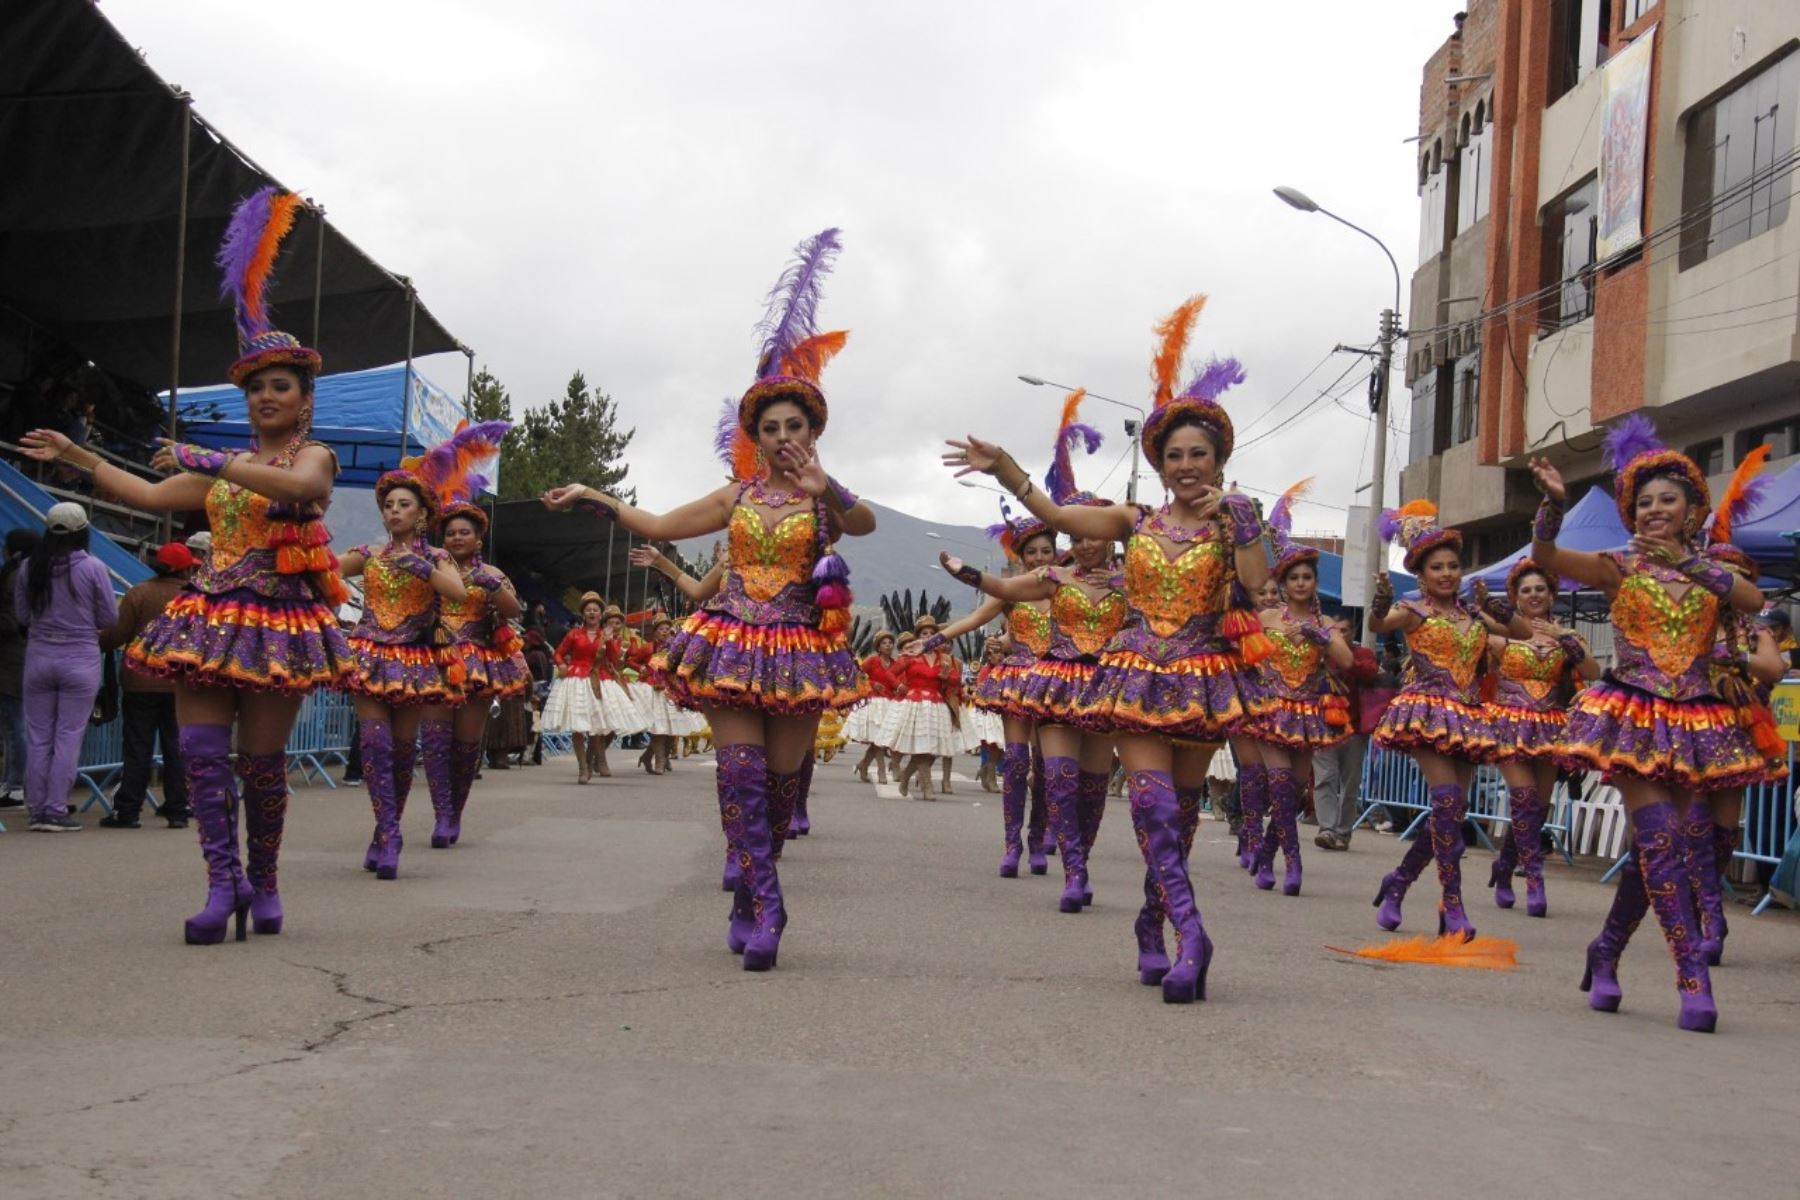 Fueron suspendidas las actividades de la Festividad de la Virgen de la Candelaria, como los concursos de danzas y de trajes. Foto: Juan Humberto Ccopa.